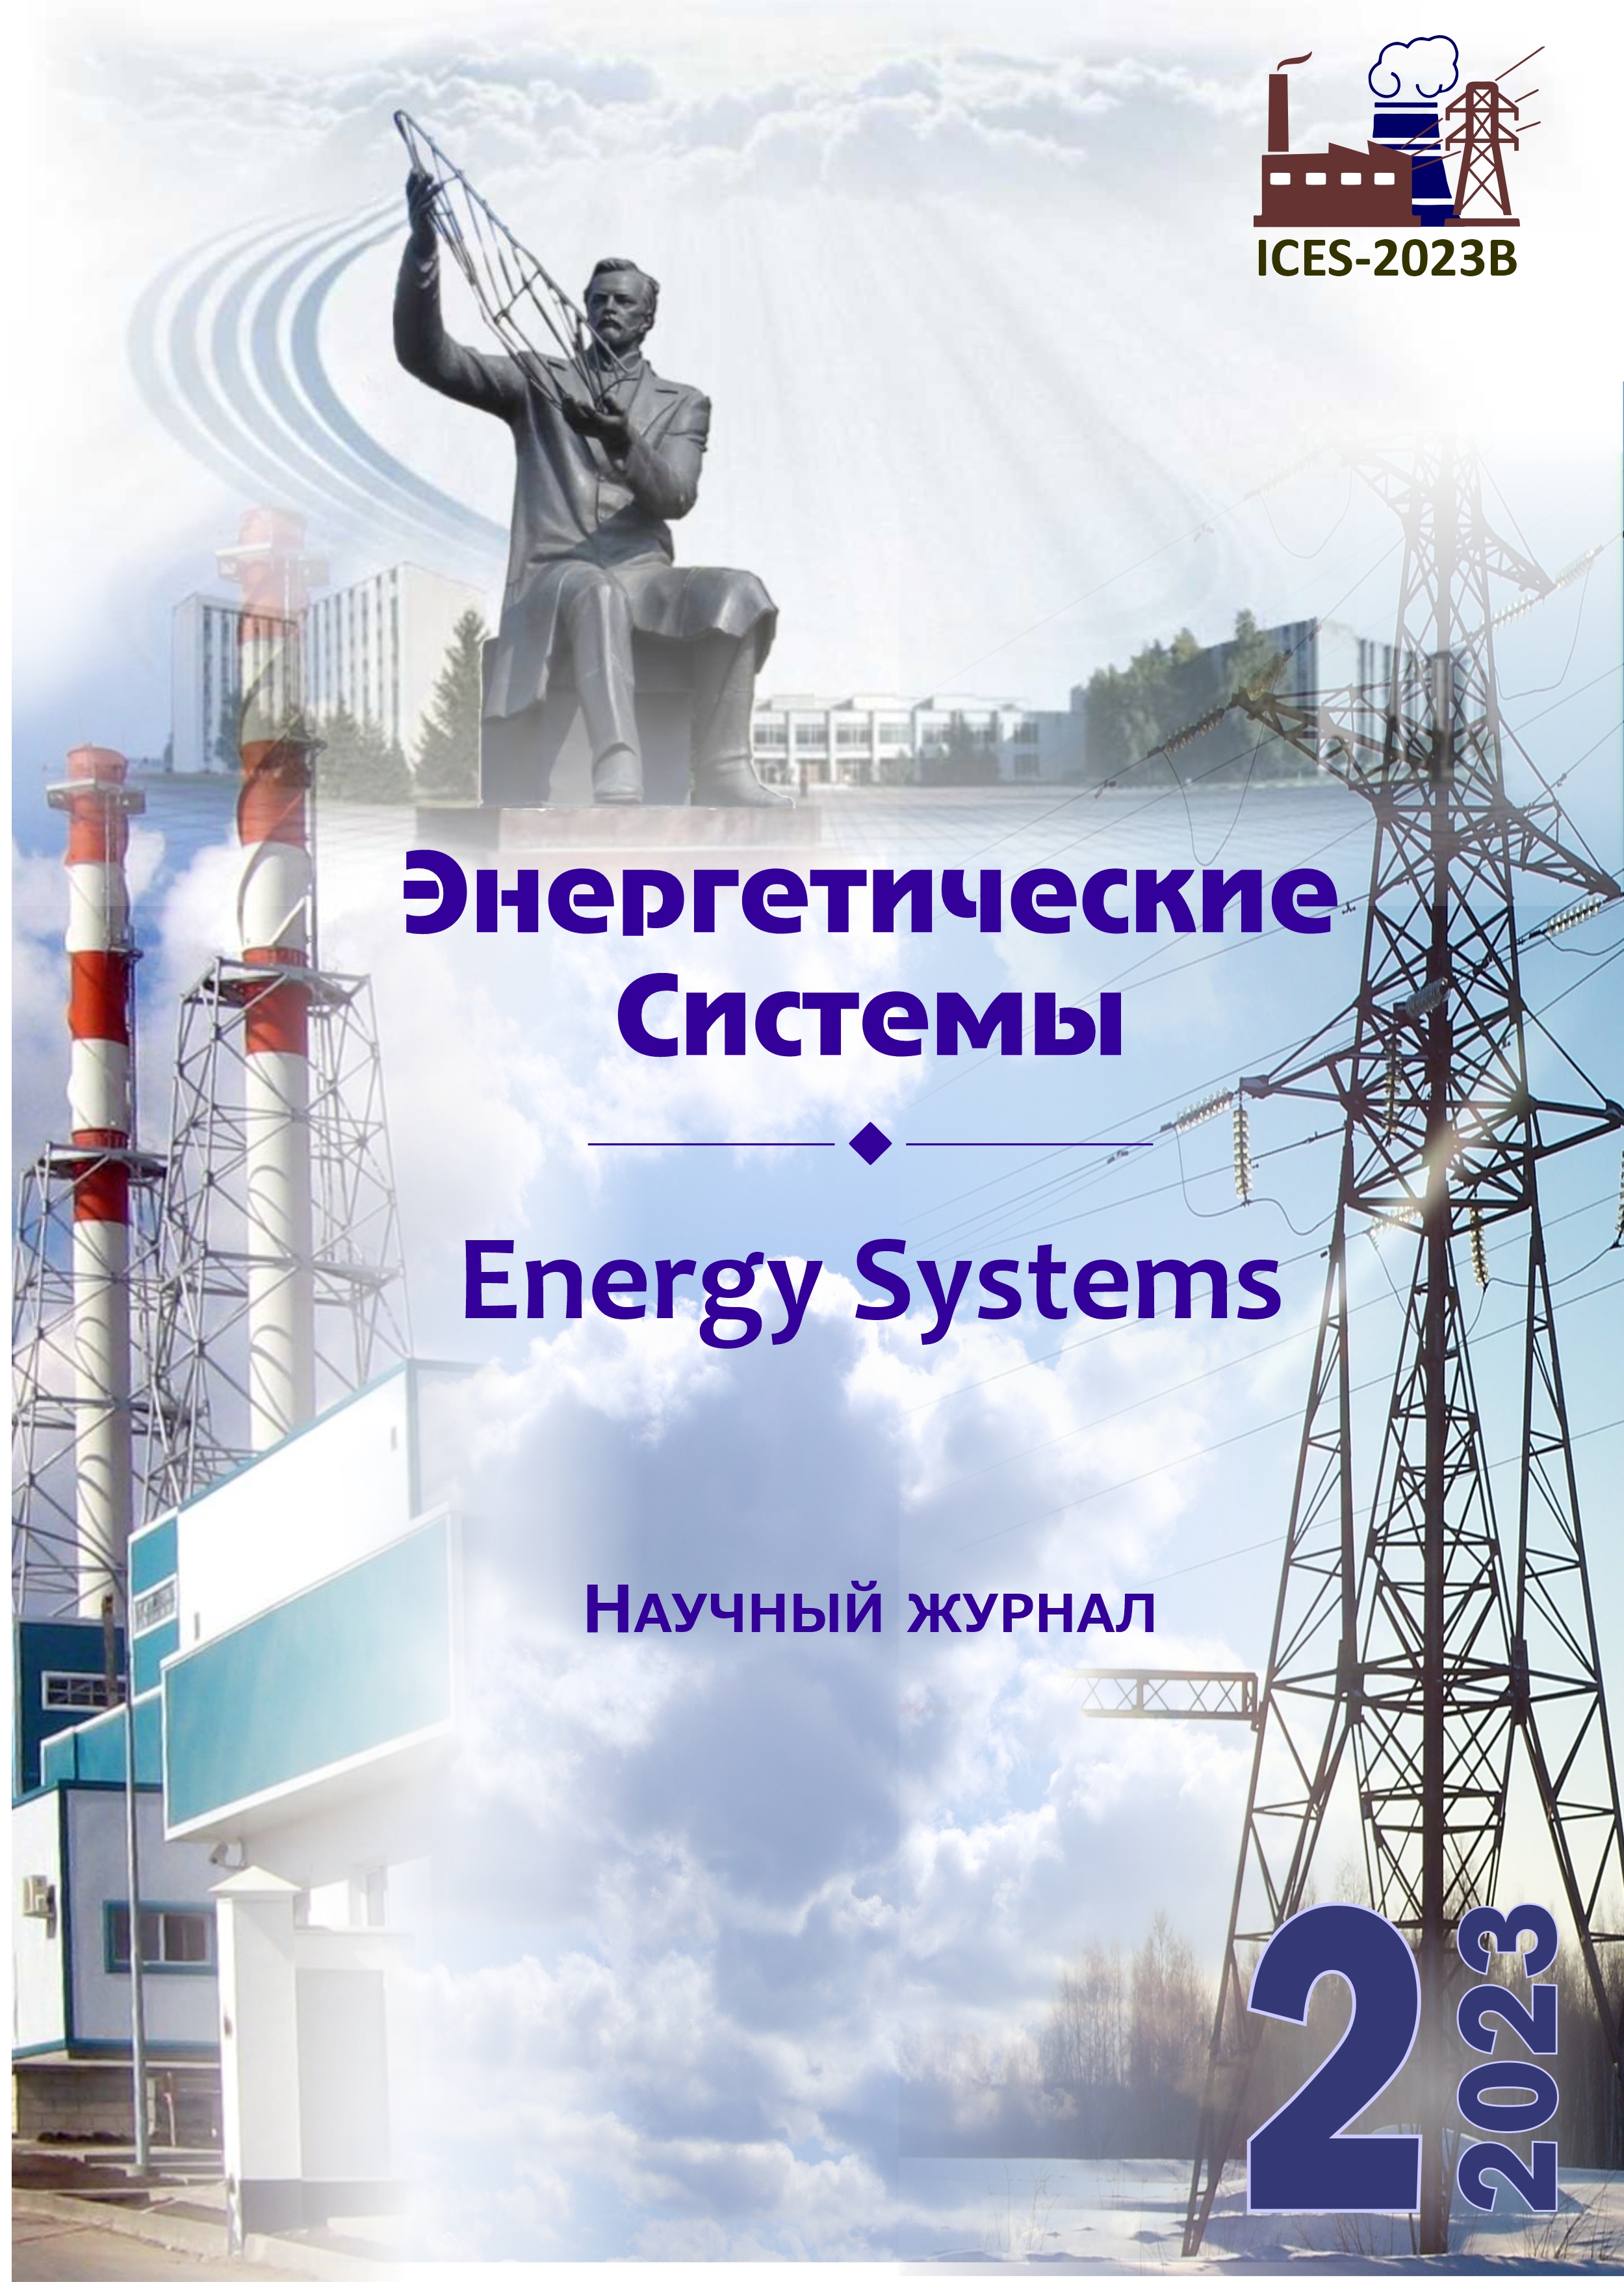 					Показать Том 8 № 2 (2023): VIII международная научно-техническая конференция «Энергетические системы» (ICES-2023B)
				